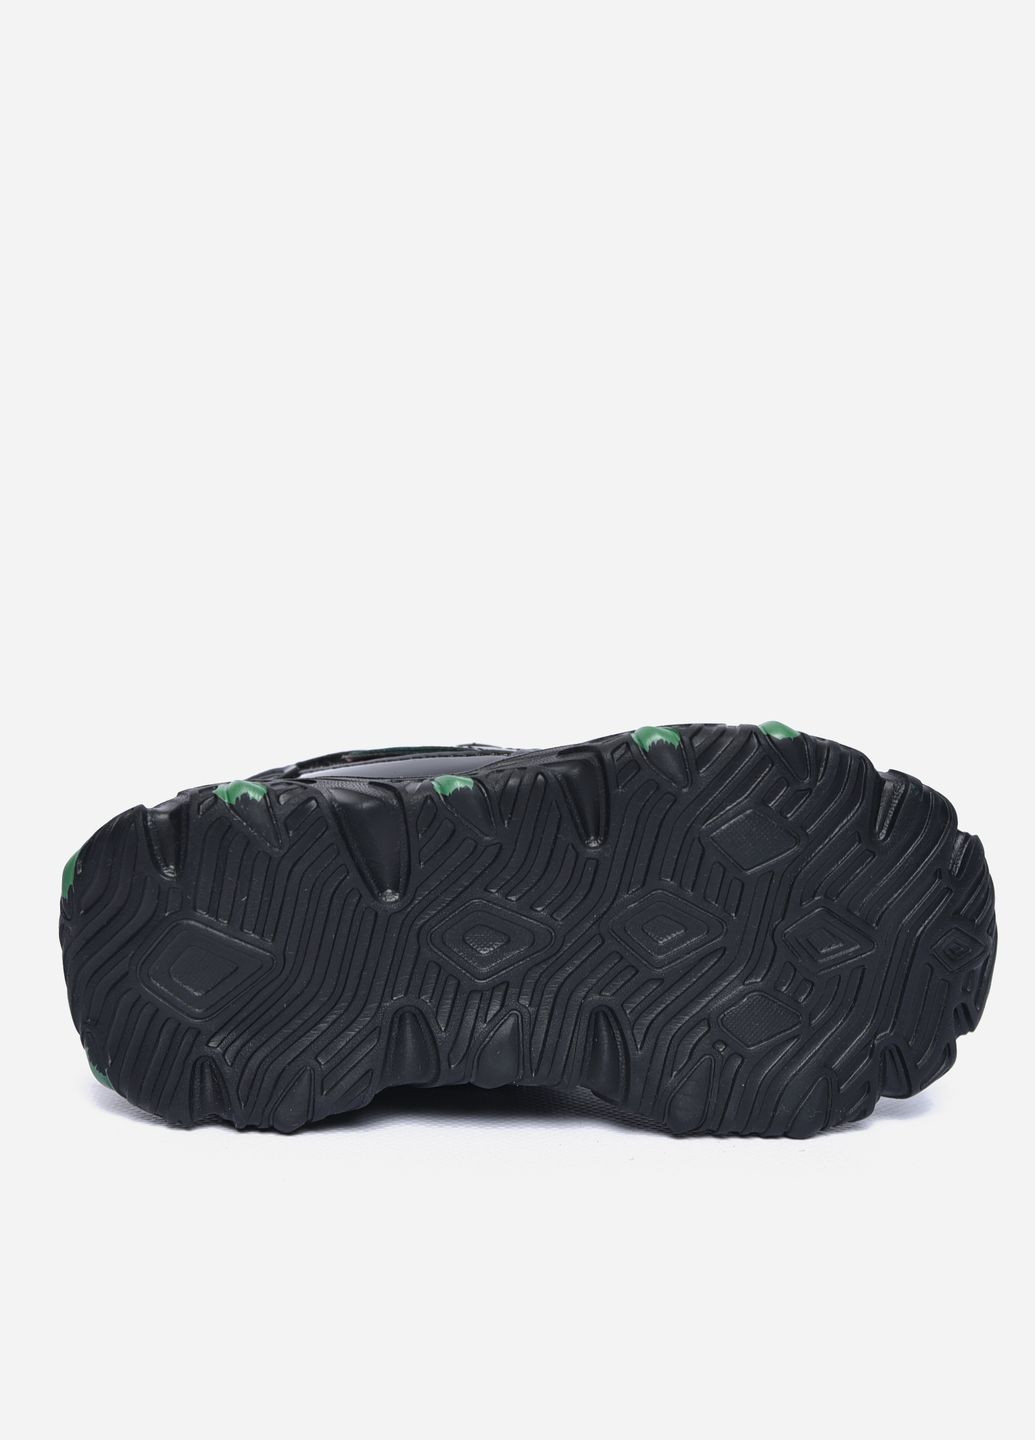 Черные демисезонные кроссовки детские для девочки на искуственном меху черного цвета Let's Shop